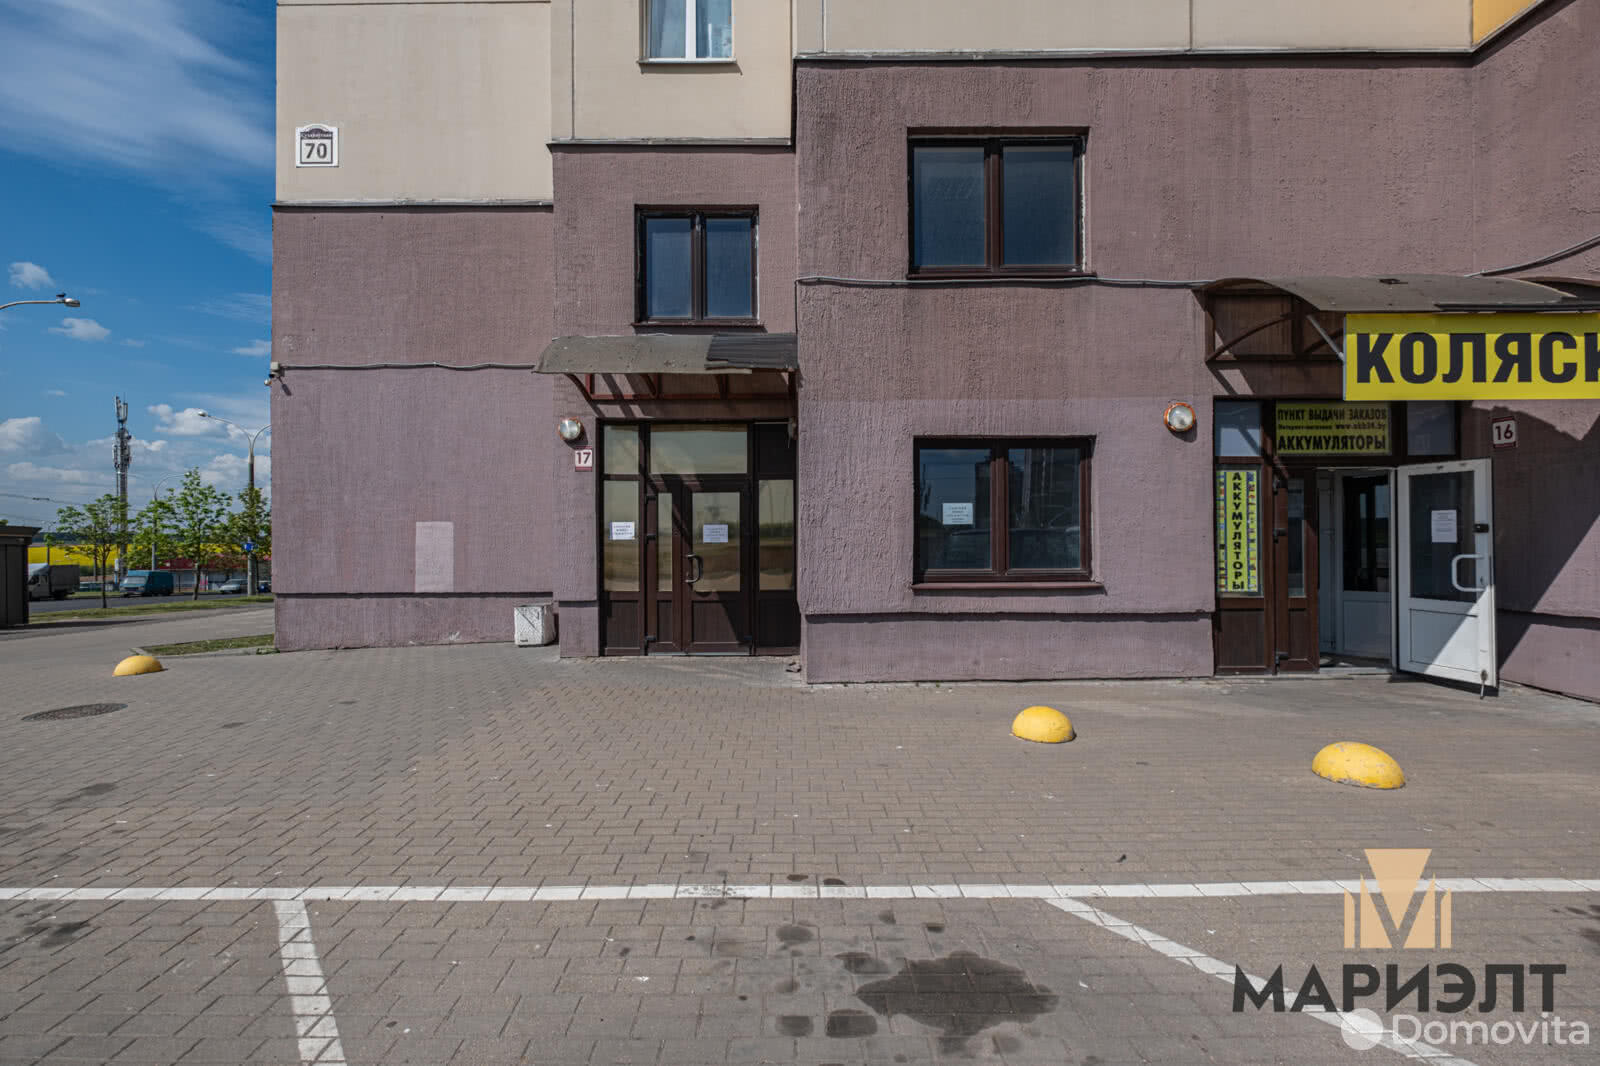 Аренда офиса на ул. Сухаревская, д. 70 в Минске, 800EUR, код 12152 - фото 3